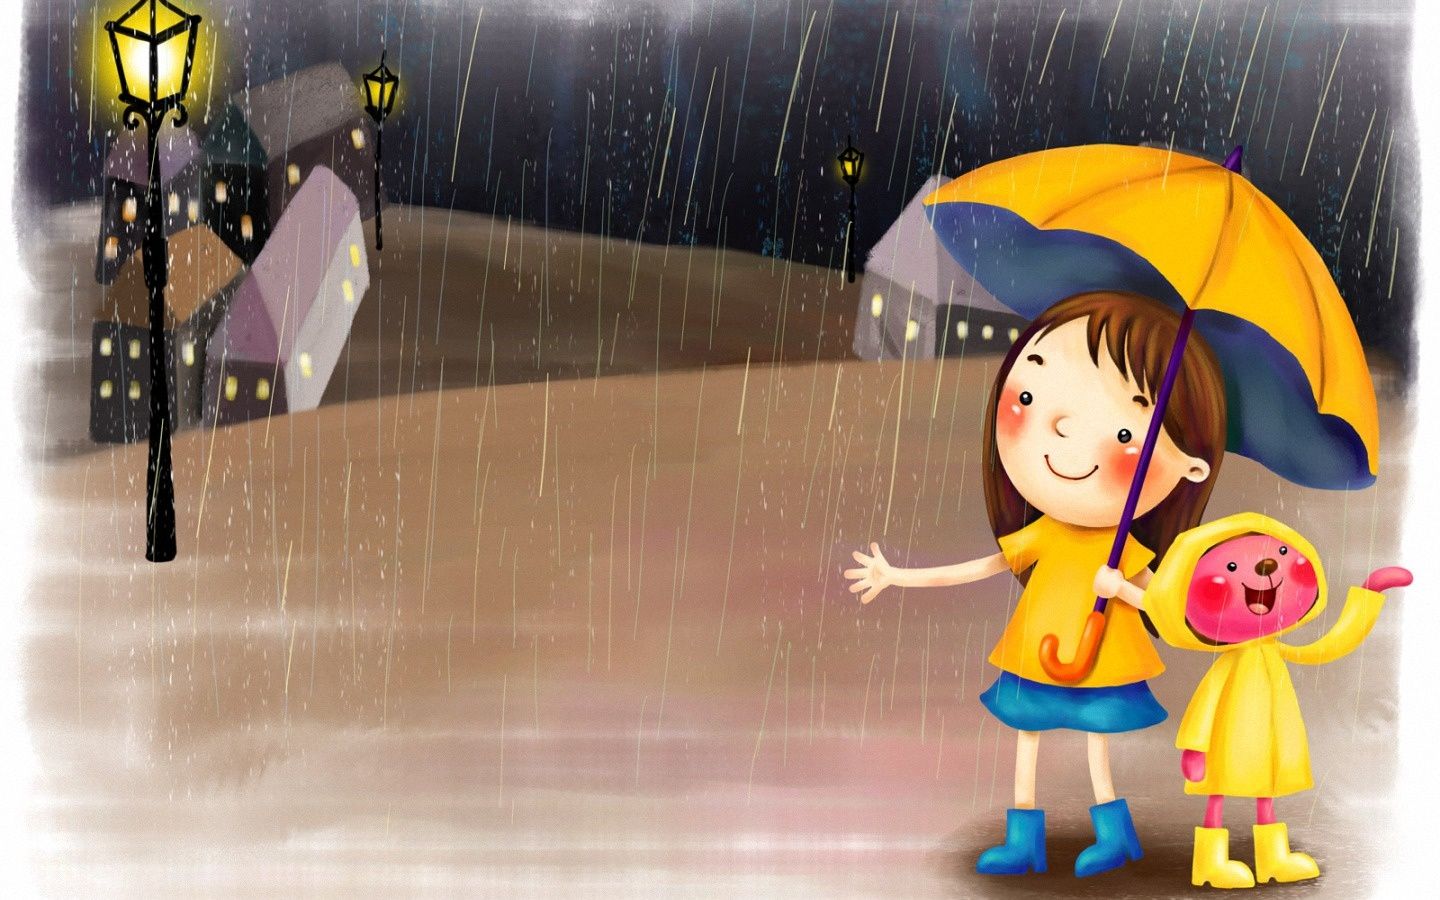 Rainy Day Rainy Season Cartoon - 1440x900 Wallpaper 